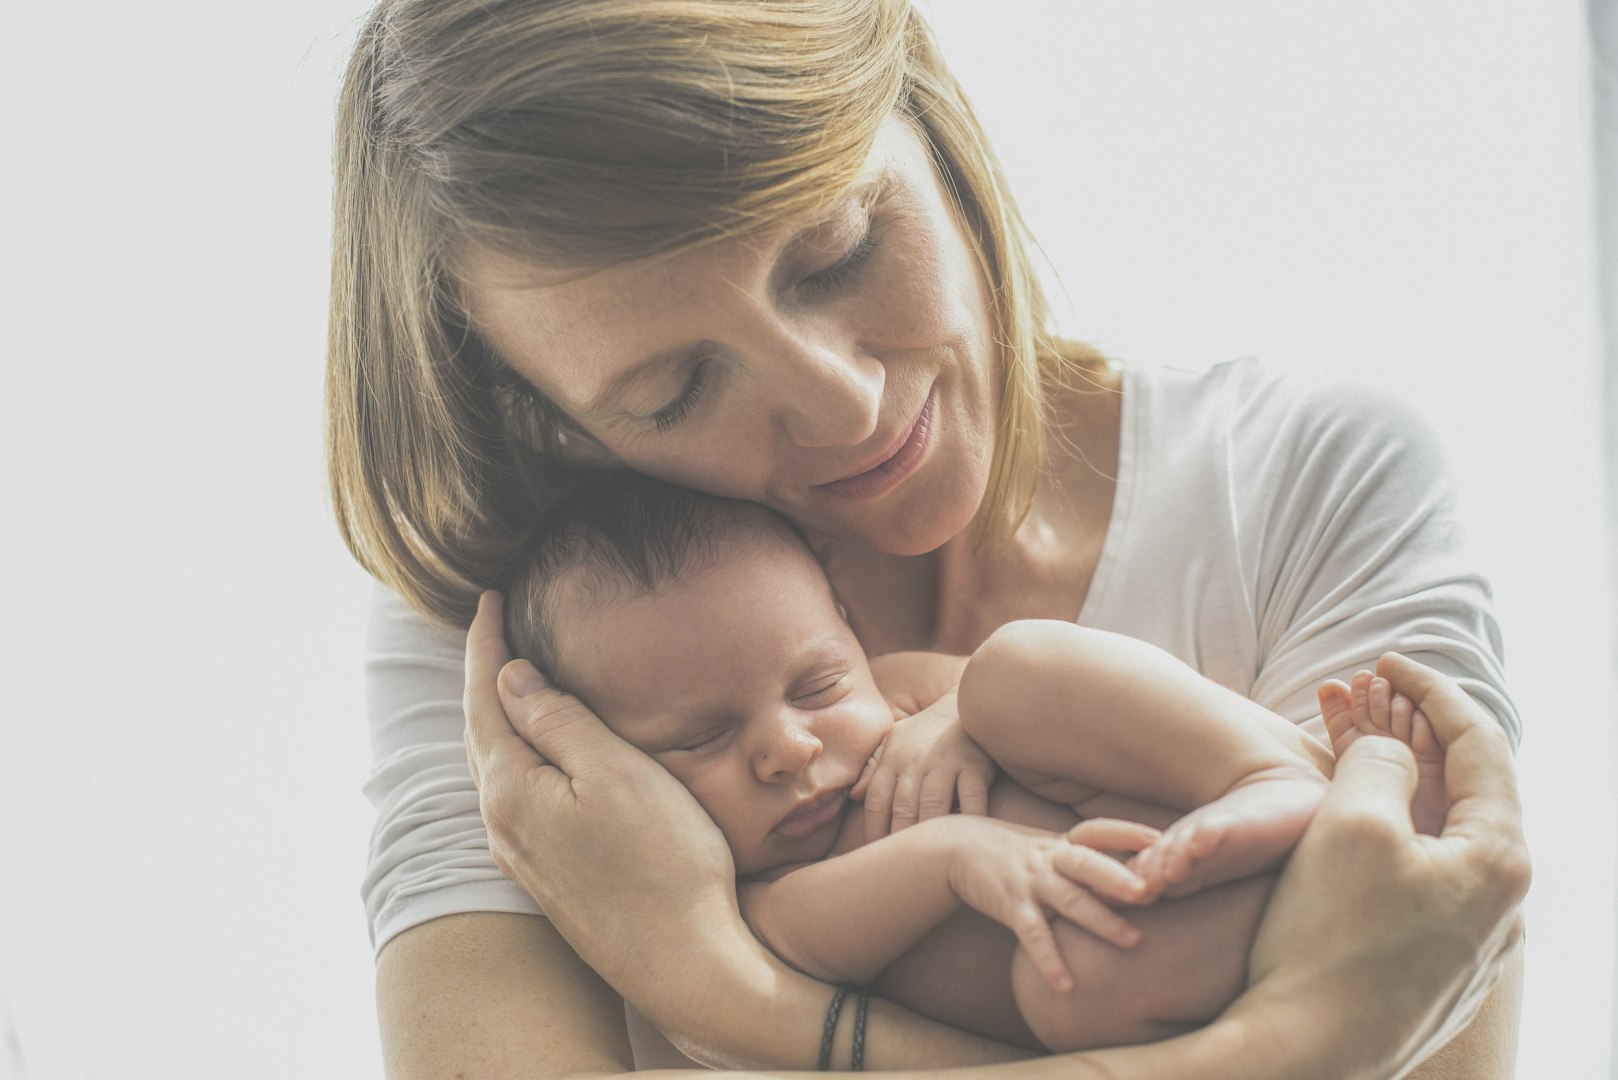 Za mamico, dojenčka in malčka. BabyBowen ali Bownova terapija za dojenčke. MNRI iz Nevrotaktilne integracije. Paket, ki mamicam ob naših protibolečinskih in antistresnih programih omogoča še dodatne storitve: priprava medenice na porod, sproščanje brazgotine po carskem rezu, uravnovešanje medeničnega dna po porodu in sicer, vzpostavljanje hormonskega ravnovesja.  Obravnava dojenčkov vključuje lajšanje krčev/kolik in polivanja/refluksa ter se posveča razvojnim težavam kot so motnje mišičnega tonusa in gibalne težave, stanja po travmatičnih porodih ali bivanju v inkubatorju. Ponujamo terapije za otroke z zaprtjem, cerebralno paralizo in podobnimi stanji, vključno z obravnavo močenja postelje.